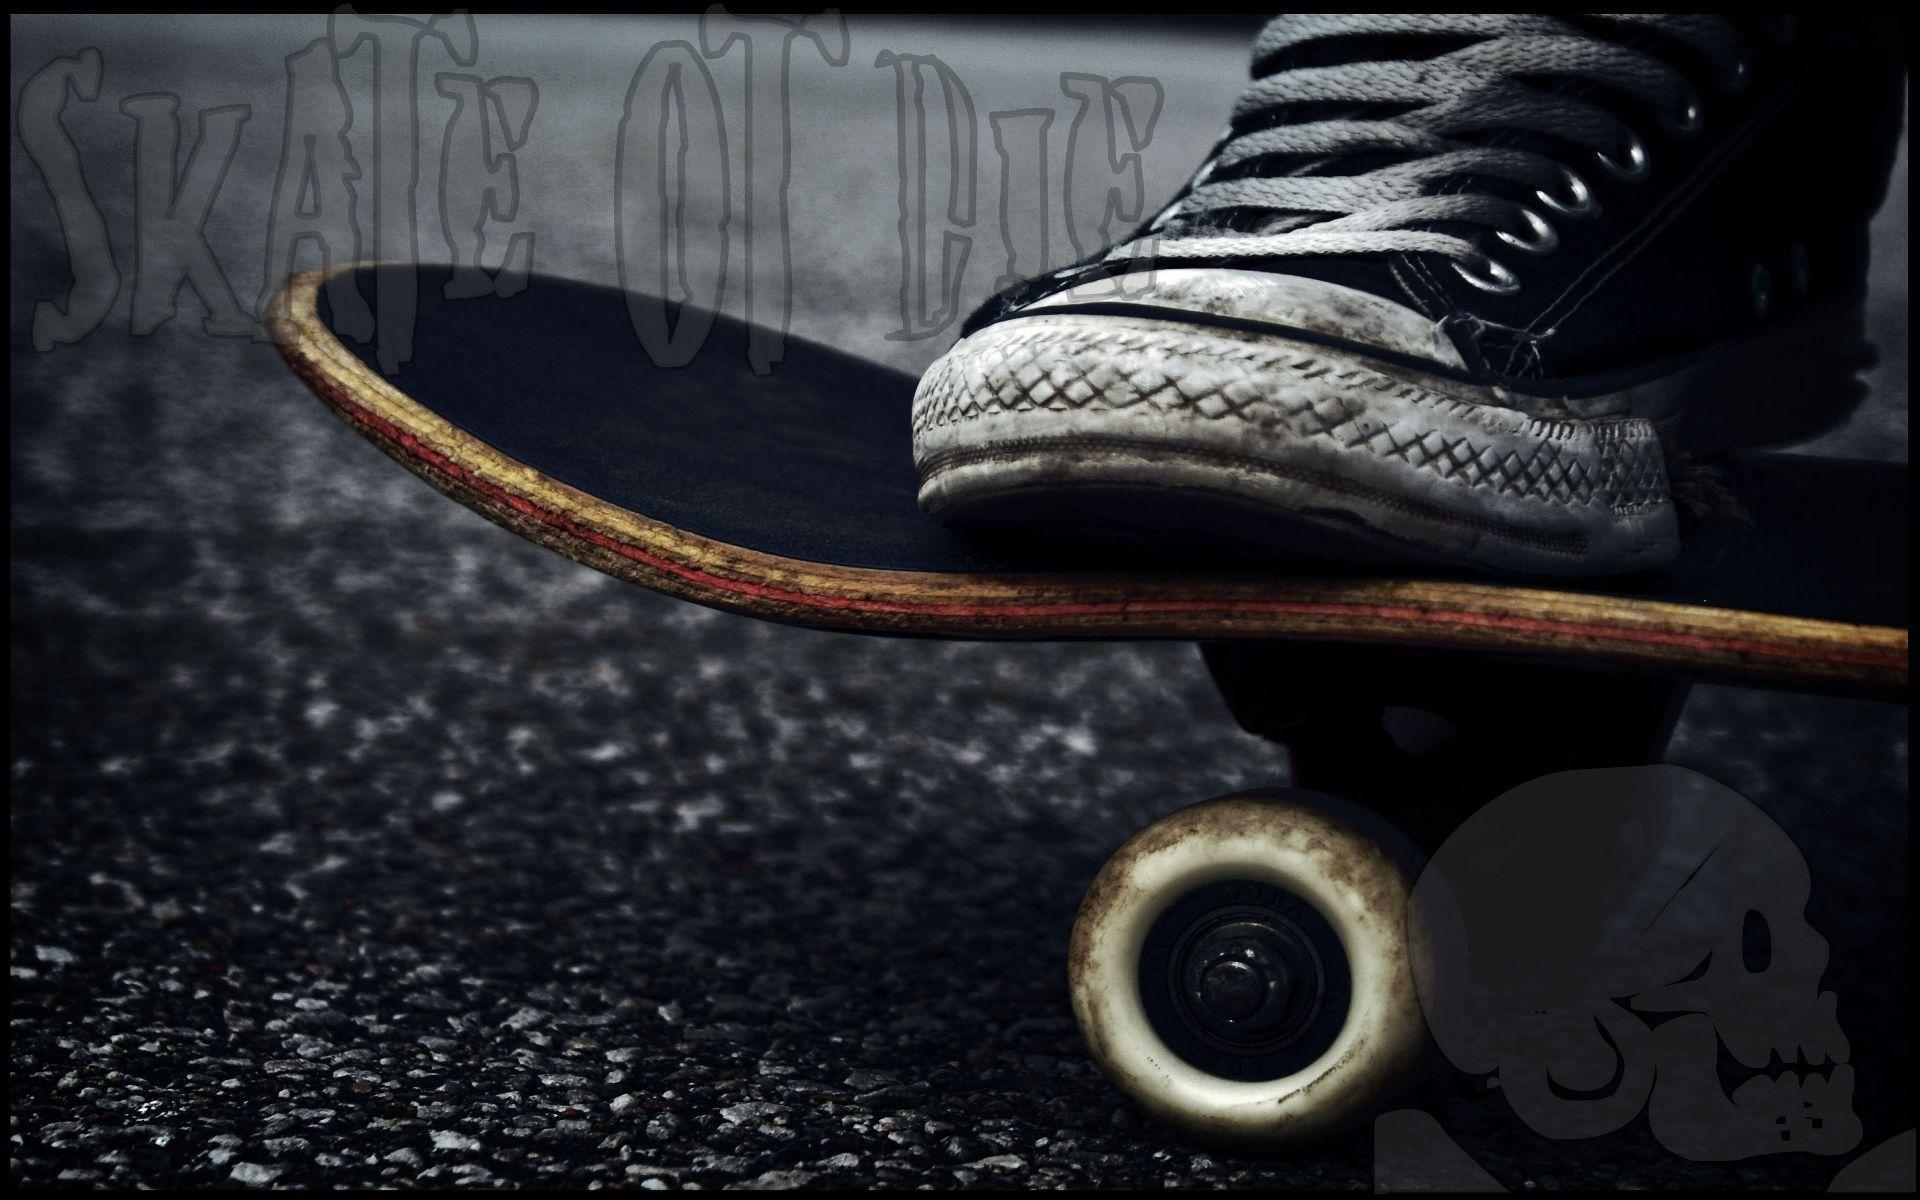 Wallpaper For > Skateboard Decks Wallpaper